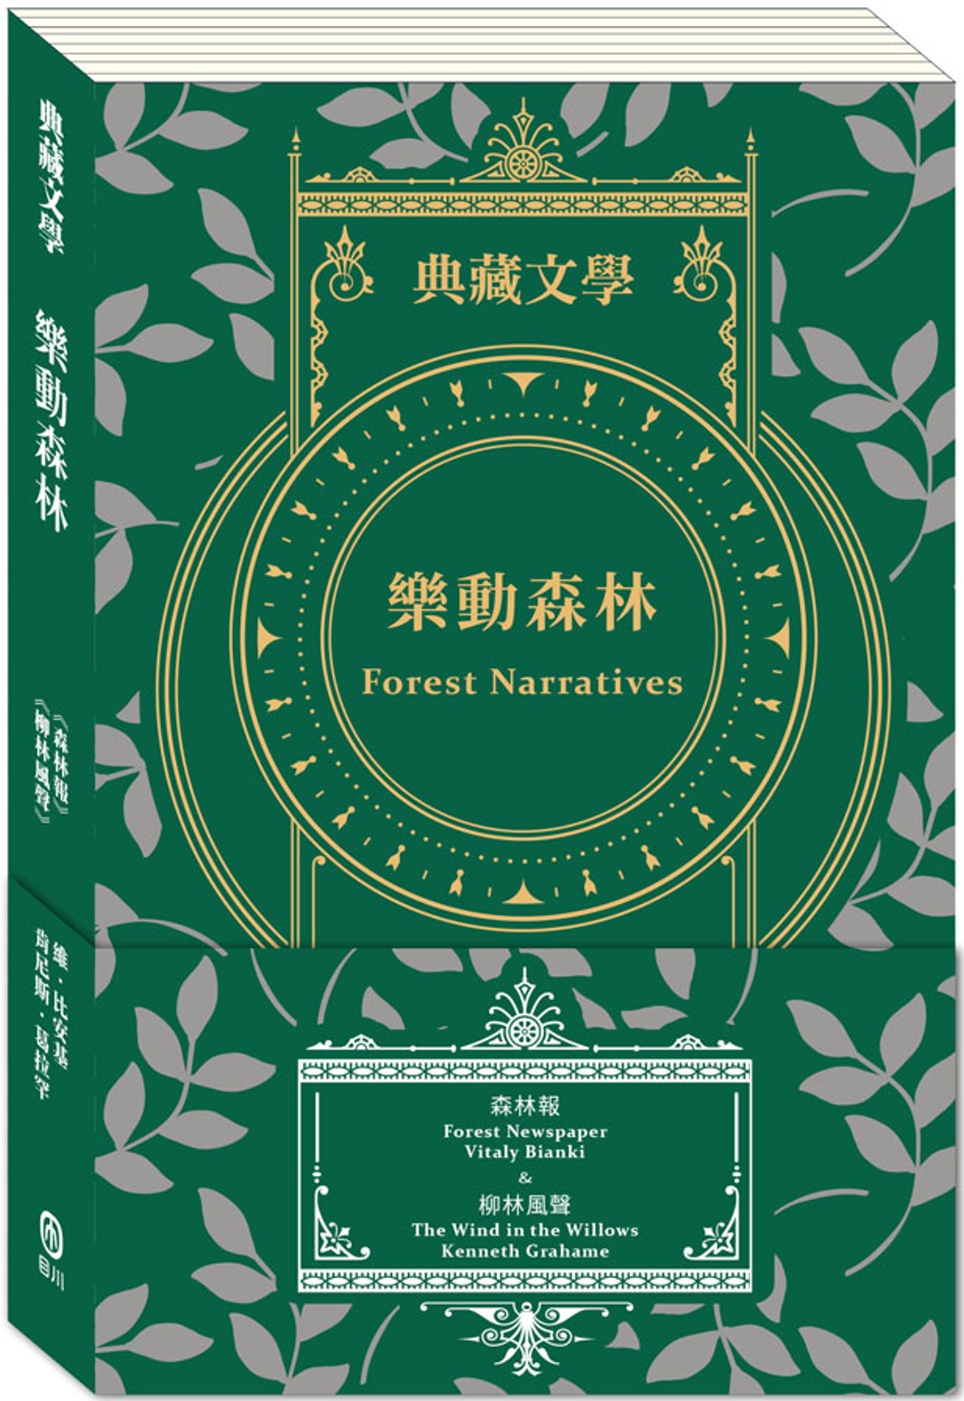 樂動森林 Forest Narratives：森林報&柳林風聲